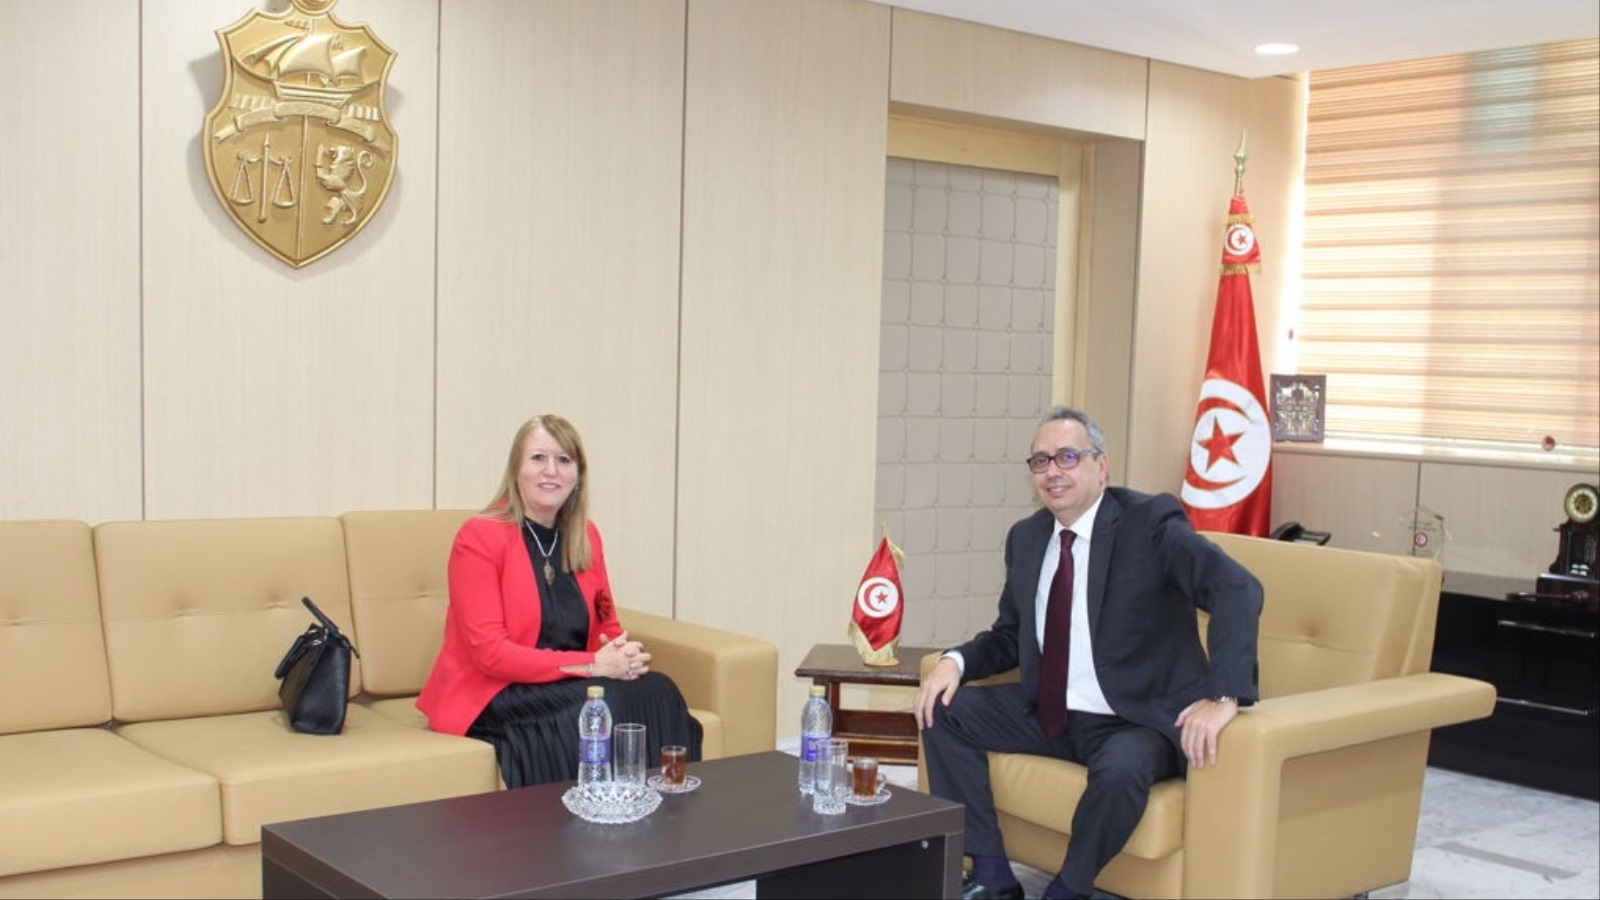 ‪ثريا الجريبي أول سيدة تترأس وزارة سيادية في تاريخ تونس‬ (مواقع التواصل)